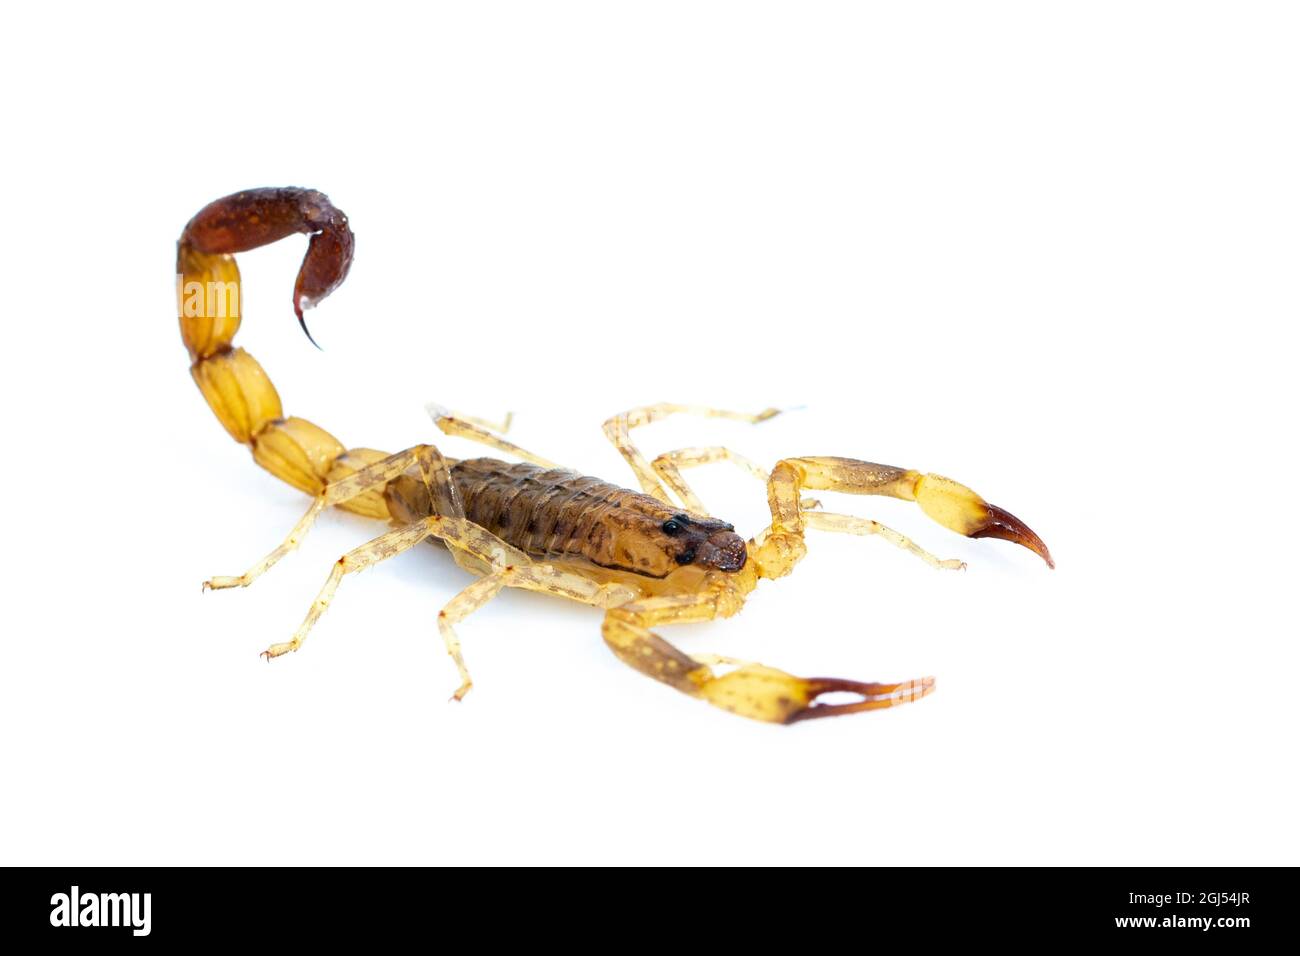 Immagine di scorpione marrone isolato su sfondo bianco. Insetto. Animale. Foto Stock